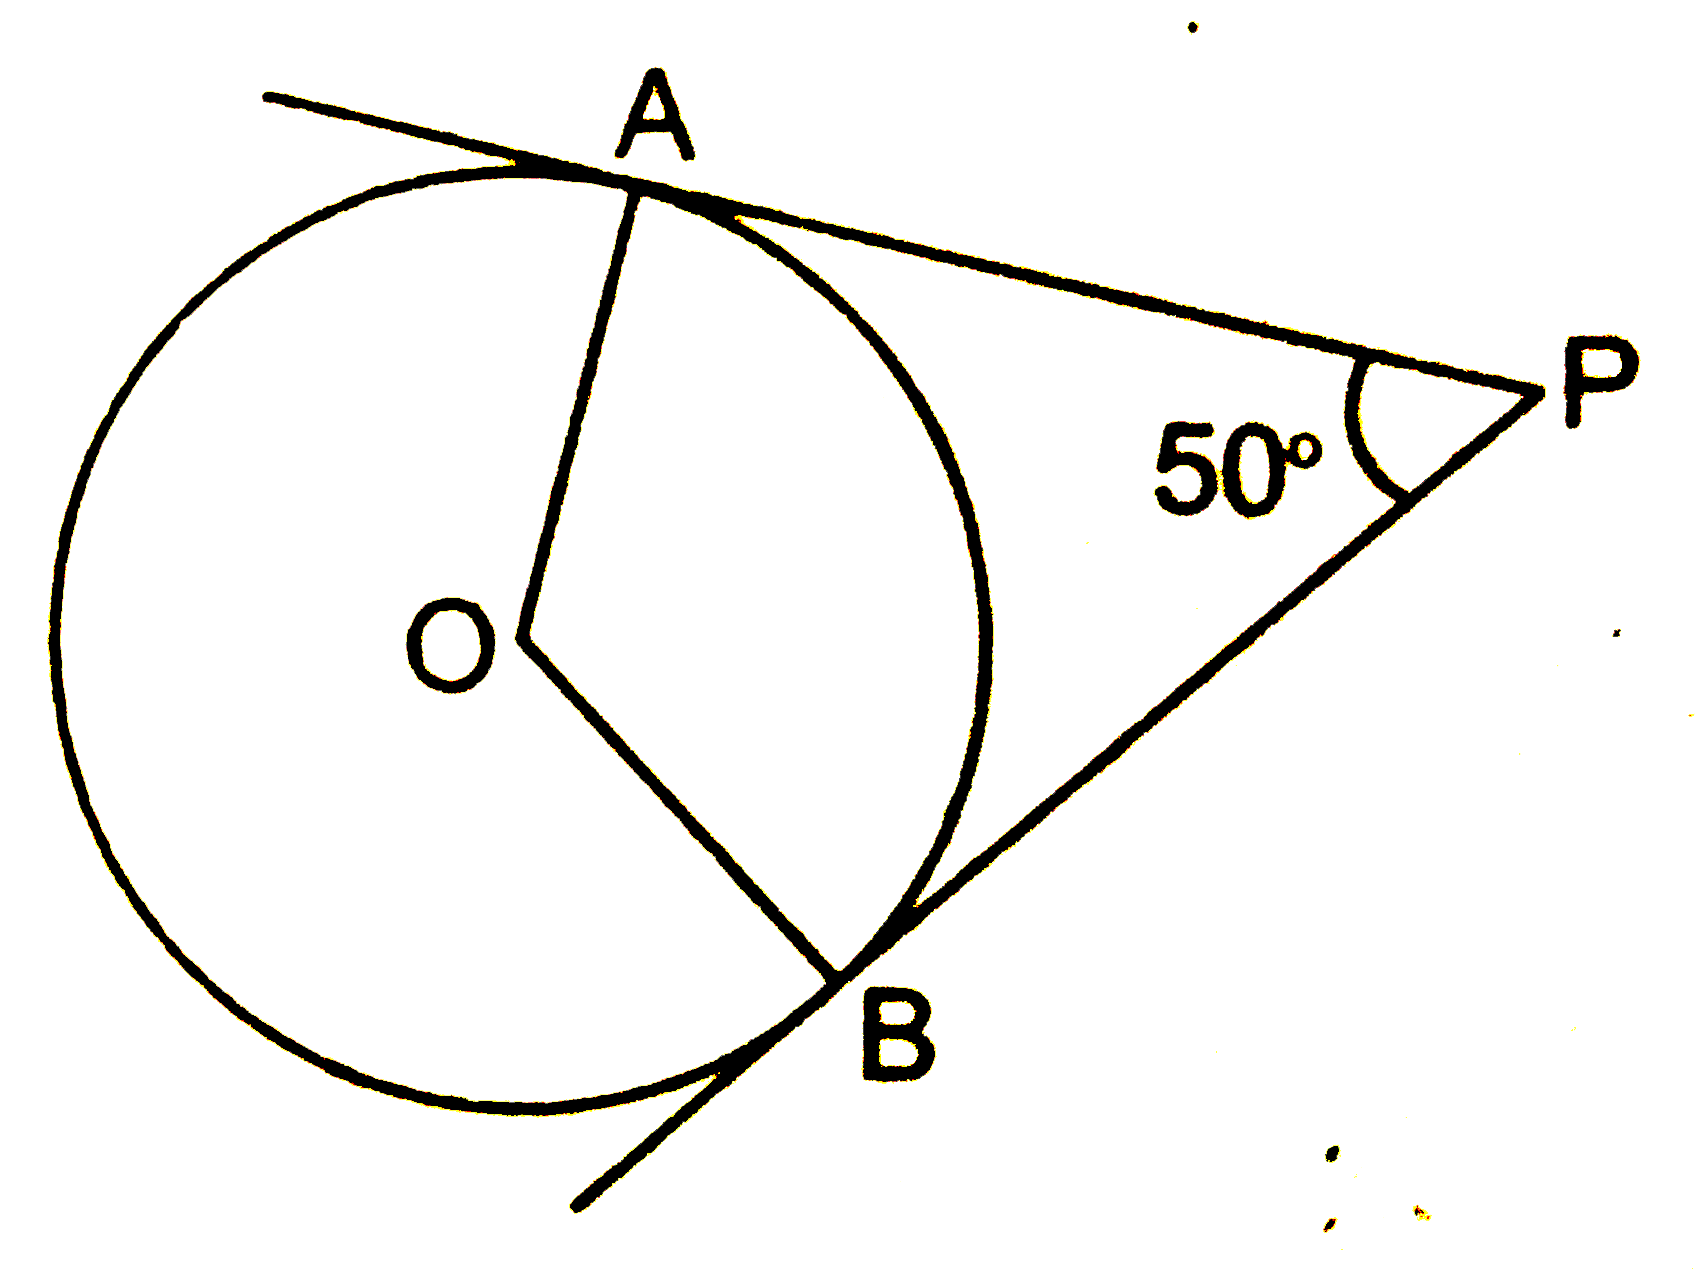 चित्र में, वृत्त का केन्द्र O है। PA तथा PB वृत्त की स्पर्श-रेखाएँ है, जिनके स्पर्श बिन्दु क्रमशः A तथा B  है। यदि angleAPB=50^(@) है, तो angleAOB की माप होगी -